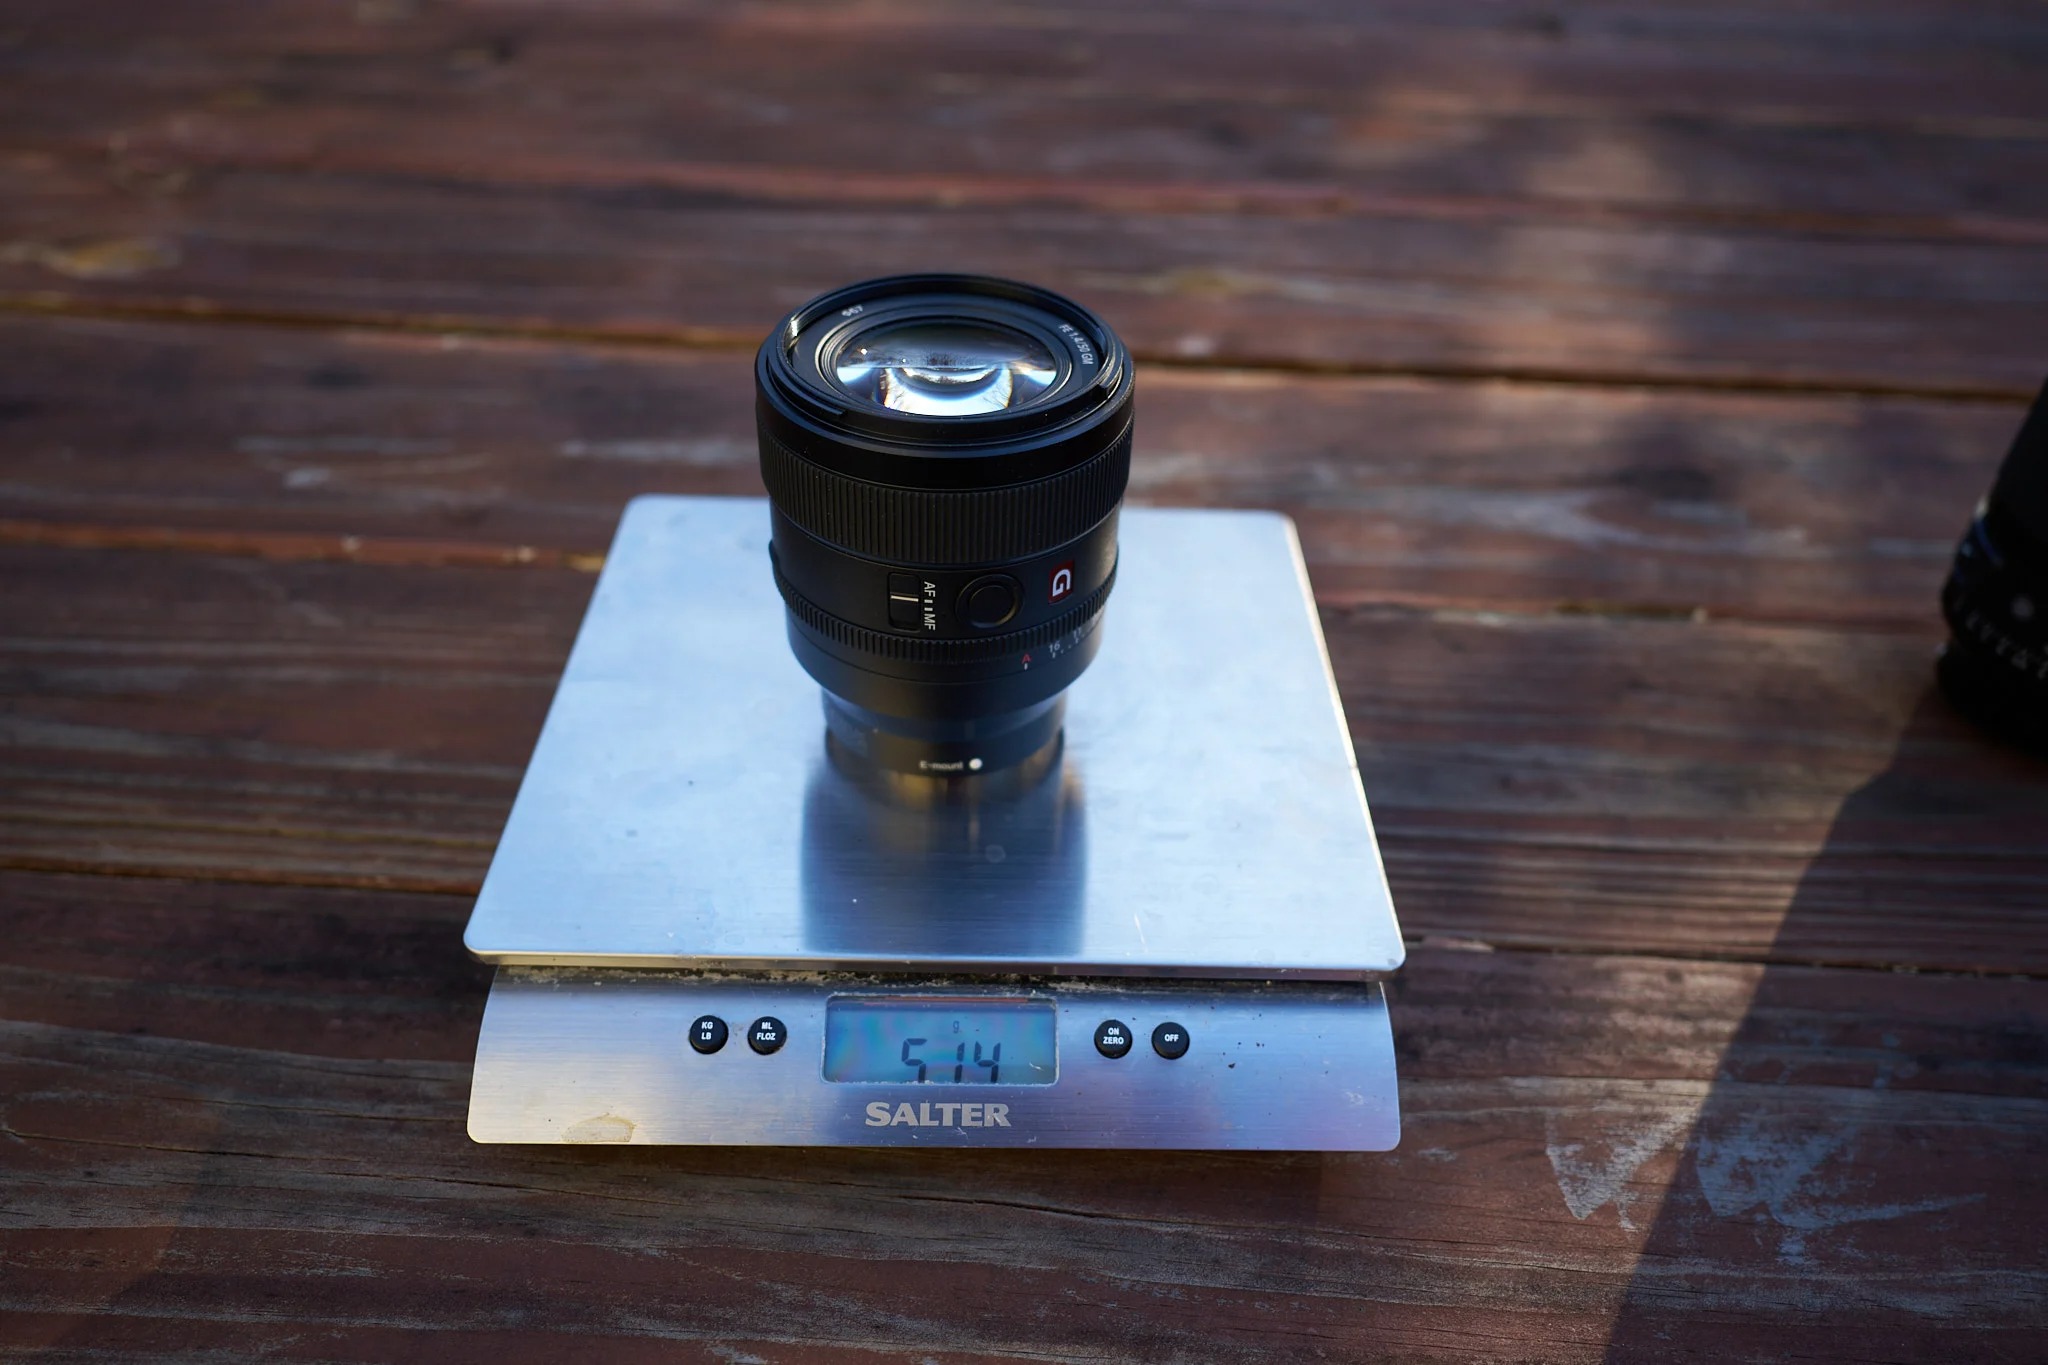 Sony ra mắt ống kính FE 50mm F1.4 GM mới với kích thước nhỏ gọn và trọng lượng nhẹ nhất trong phân khúc